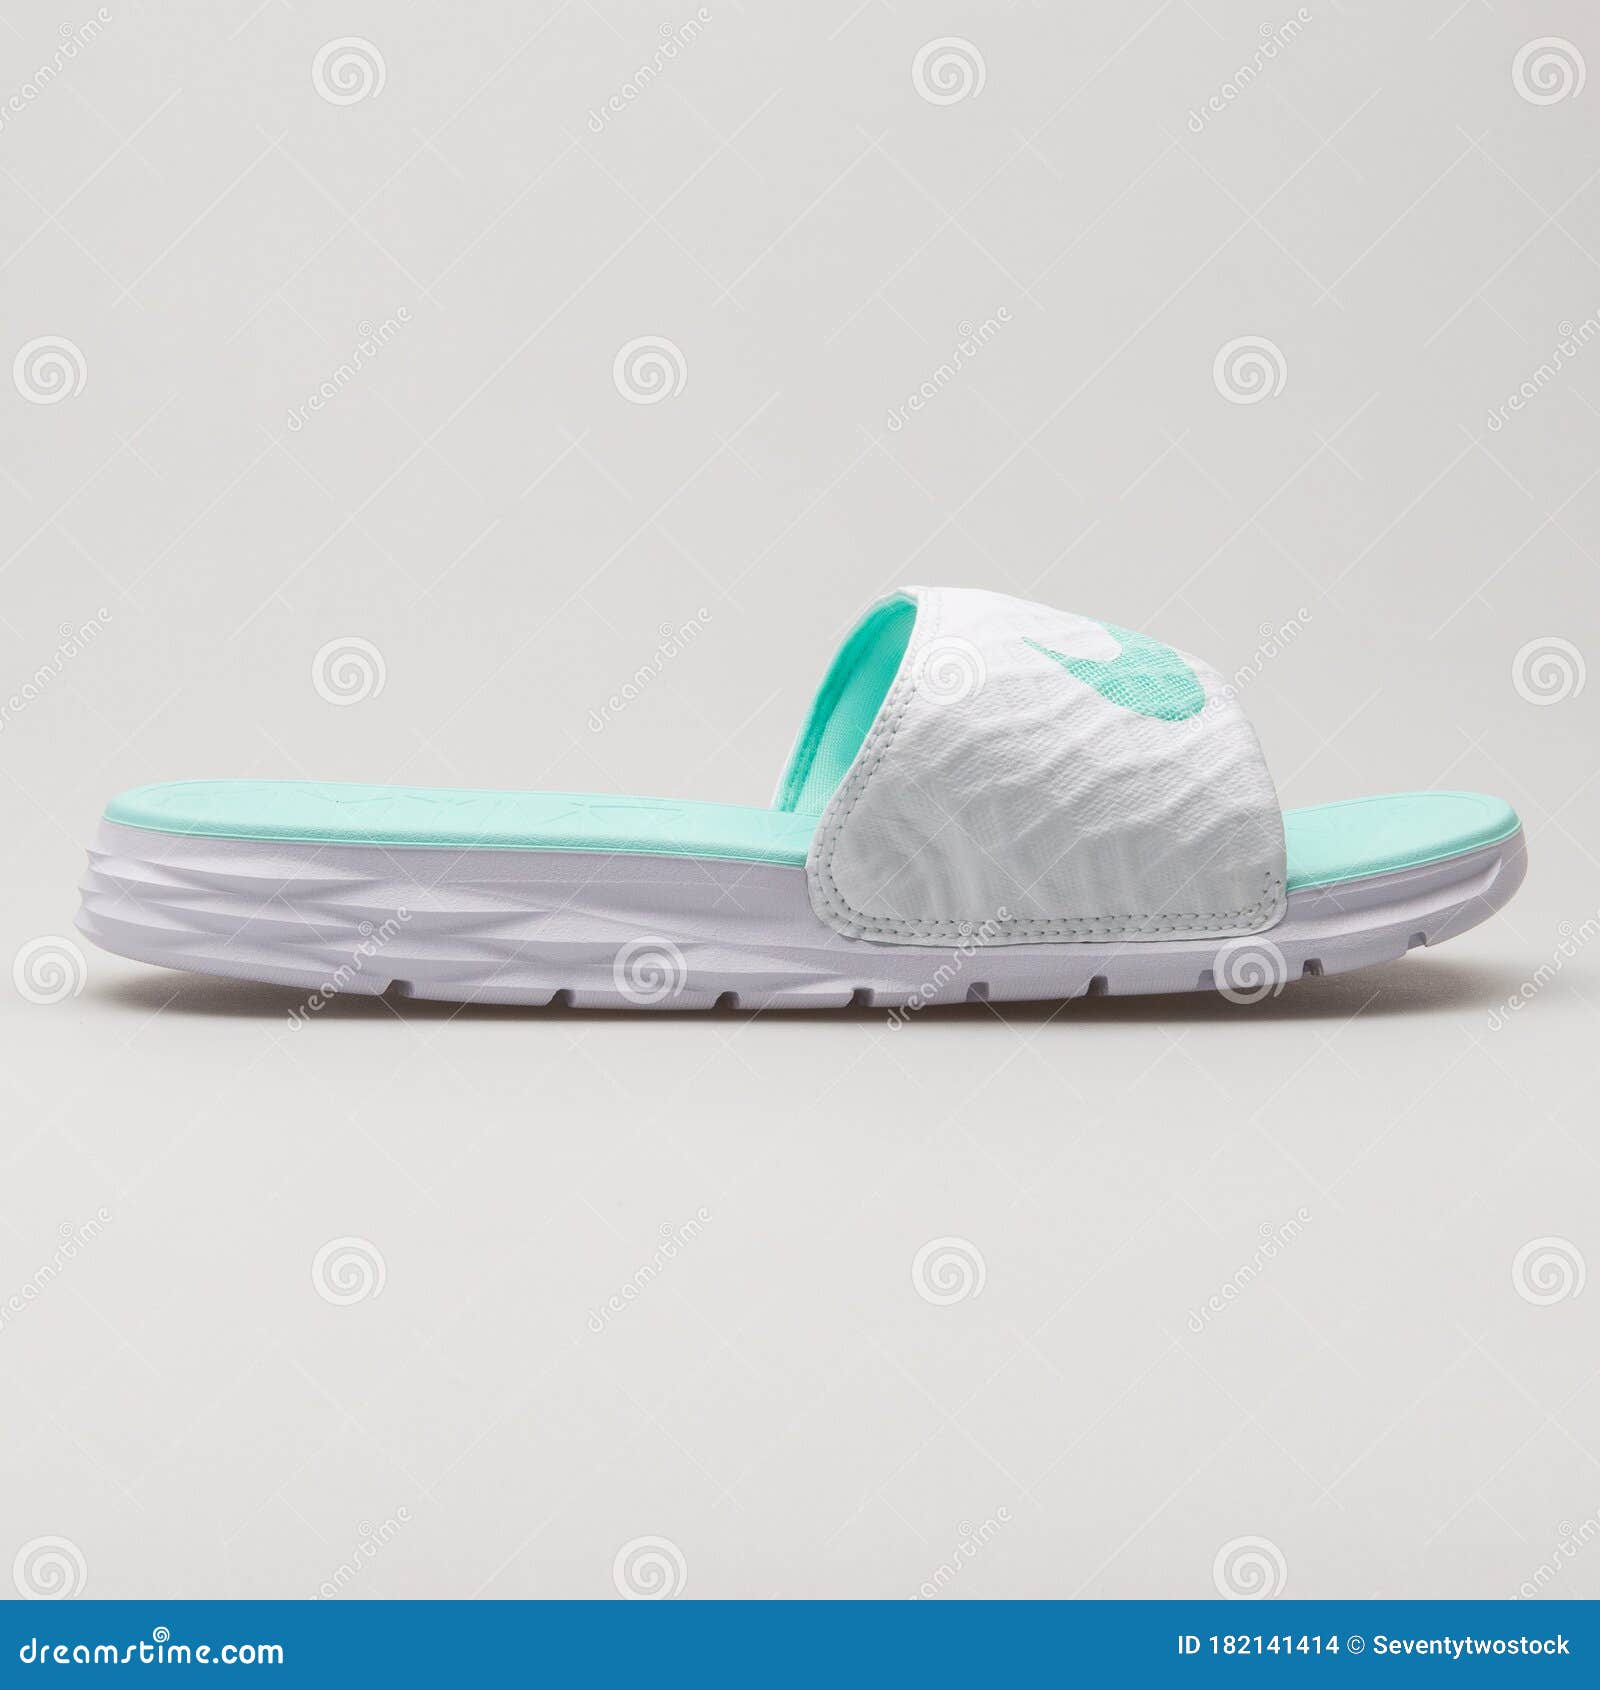 Nike Solarsoft Sandalias Blancas Y De Ternera archivo editorial - Imagen de cara: 182141414